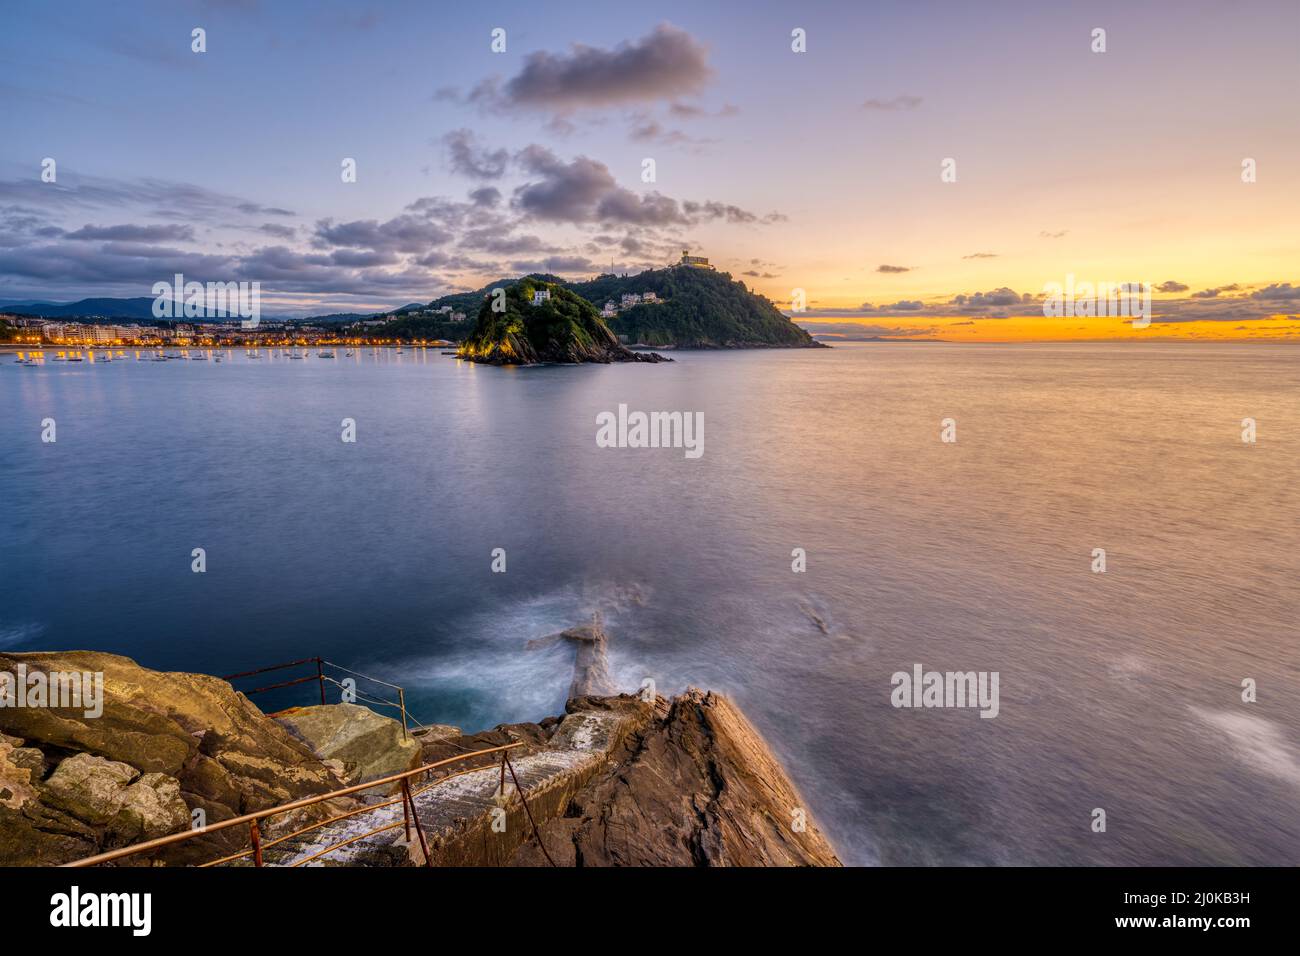 La bahía de San Sebastián en España con Monte Igueldo al atardecer Foto de stock